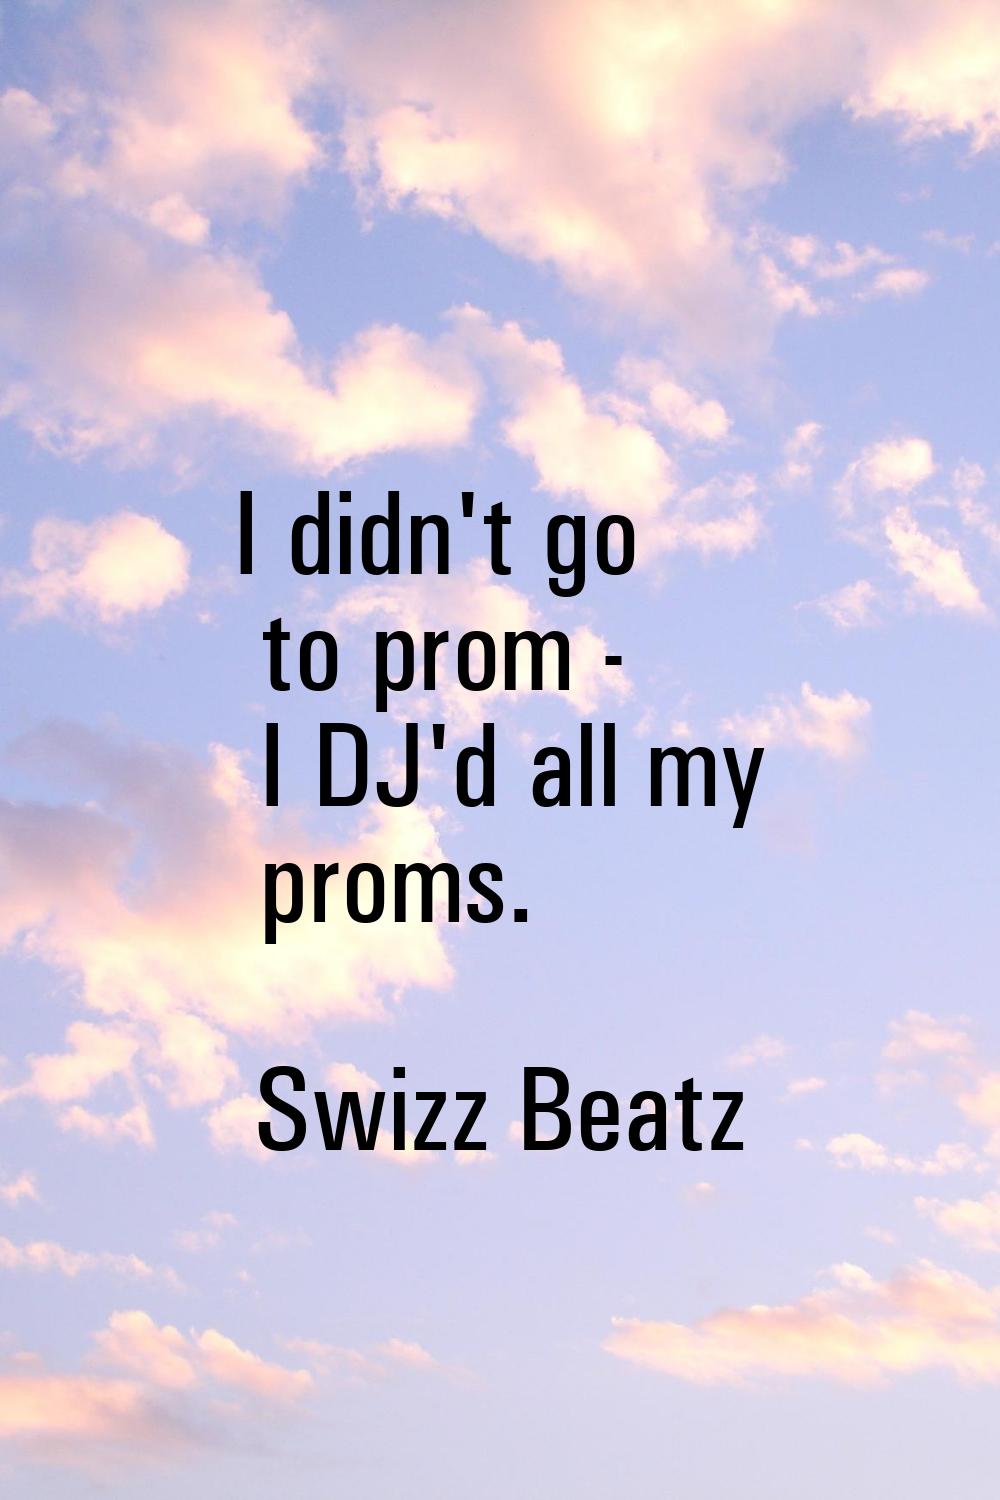 I didn't go to prom - I DJ'd all my proms.